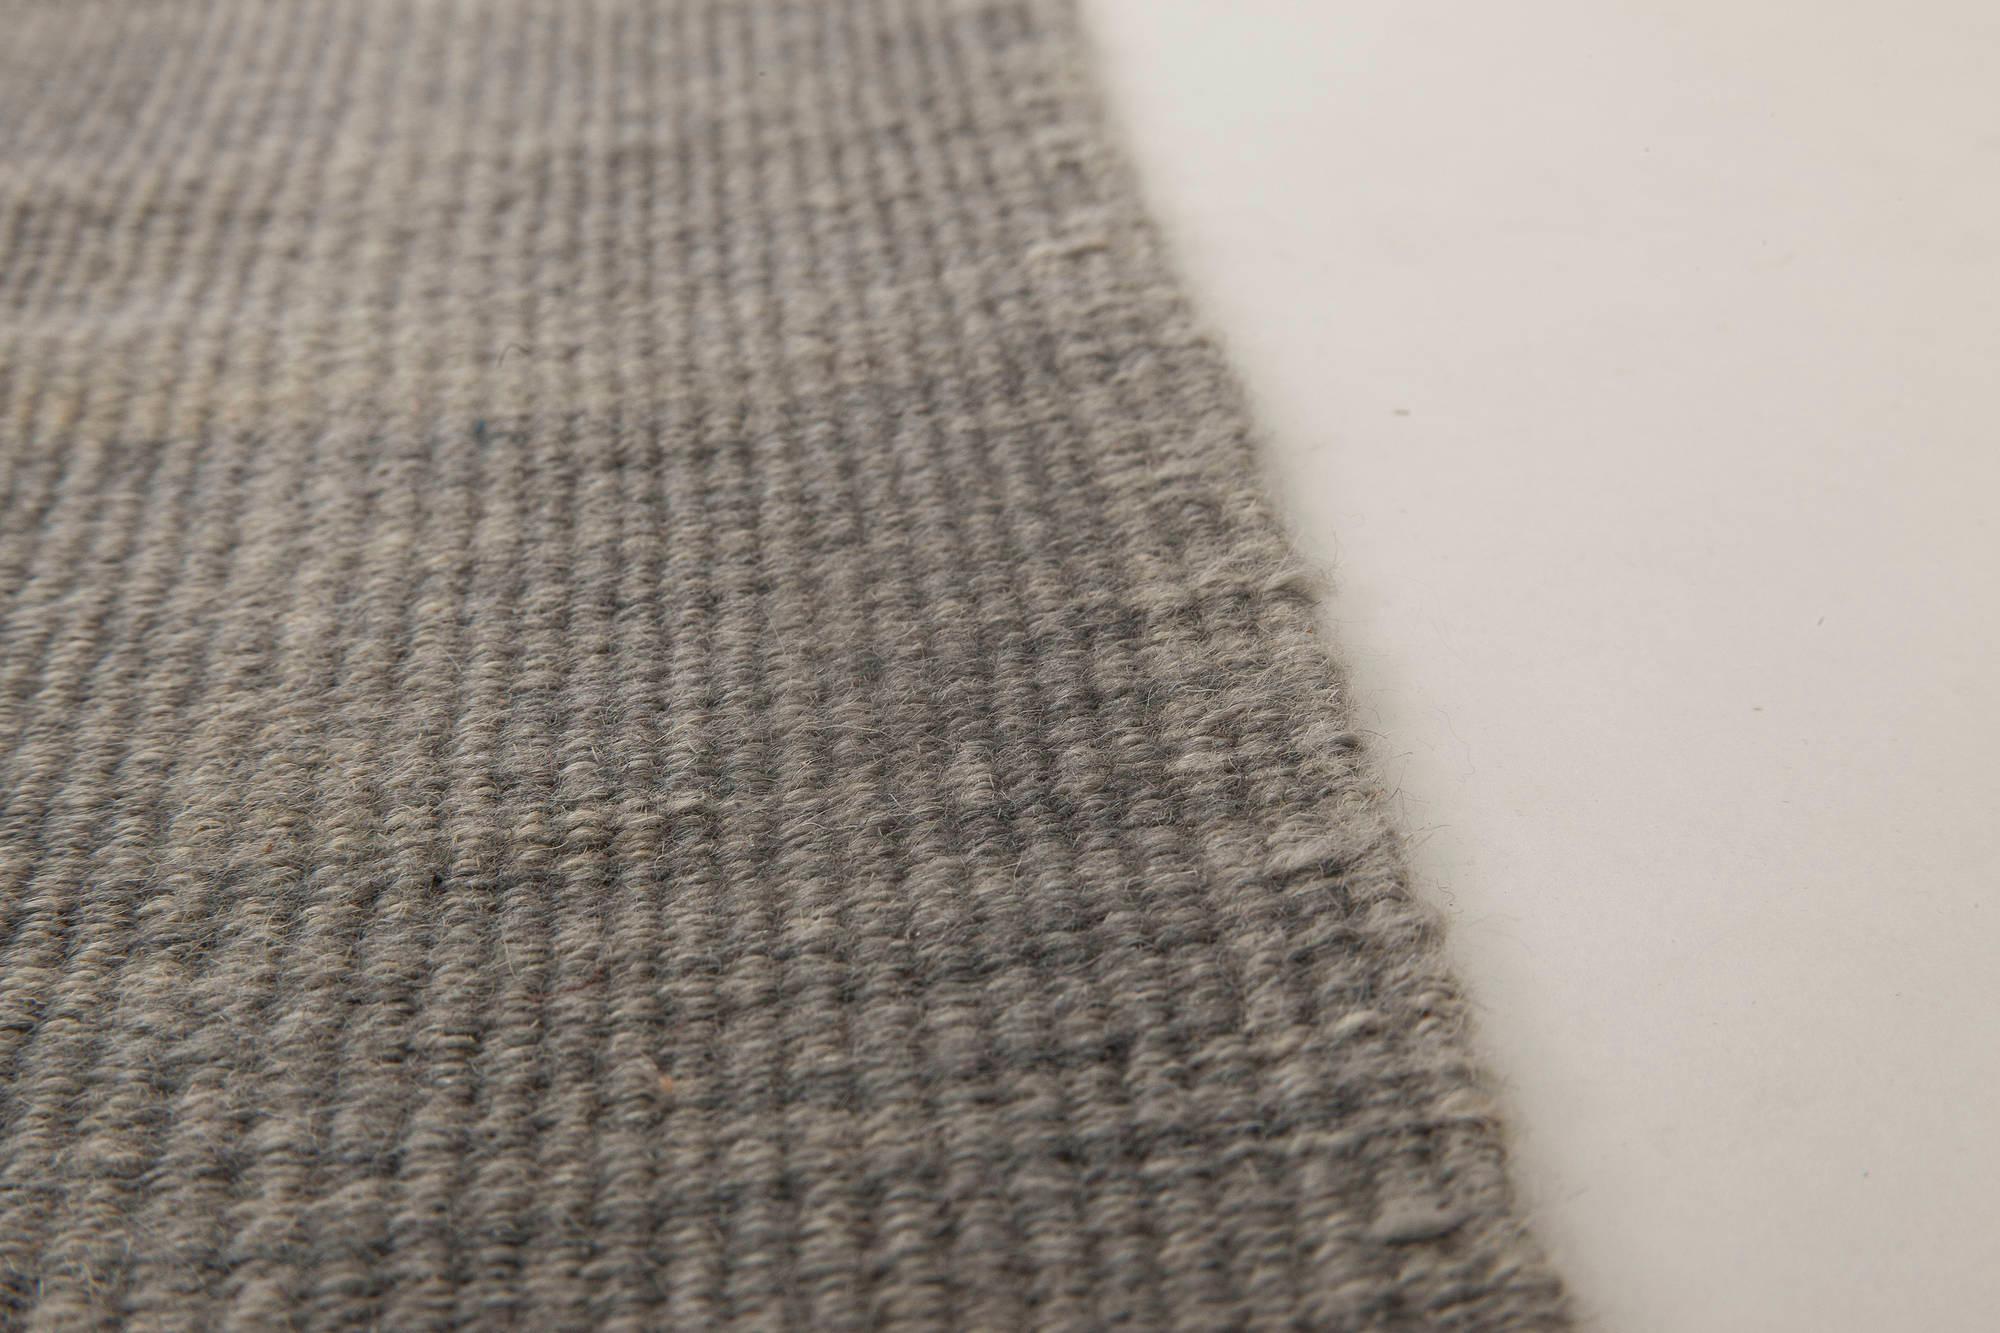 Tapis contemporain en laine tissée à plat, argenté et bleu, de Doris Leslie Blau.
Taille : 10'0